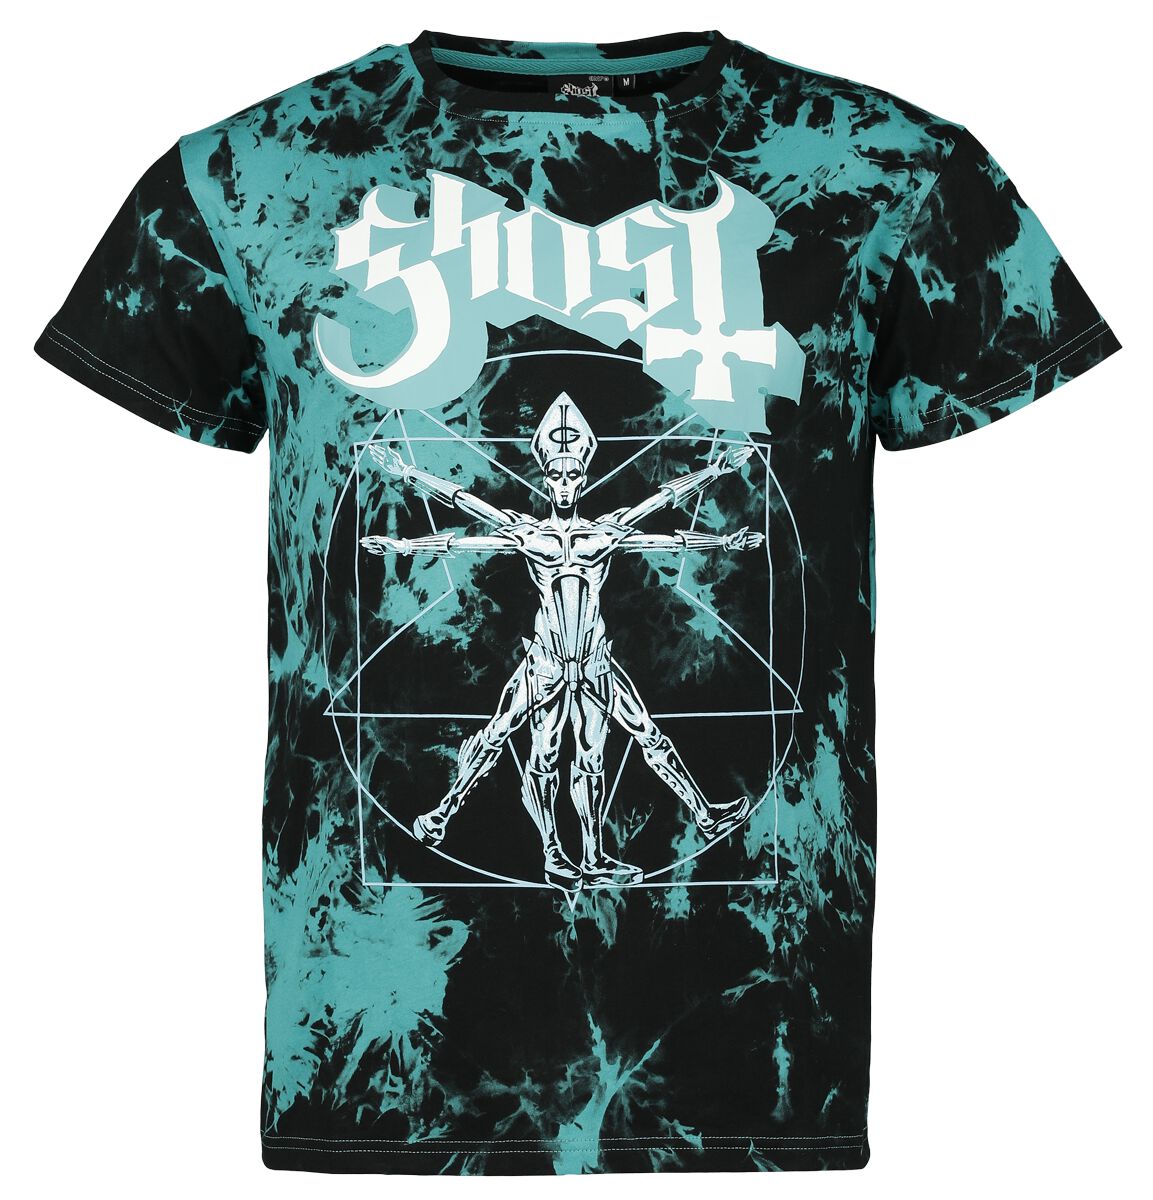 Ghost T-Shirt - EMP Signature Collection - S bis 3XL - für Männer - Größe XL - schwarz/türkis  - EMP exklusives Merchandise!